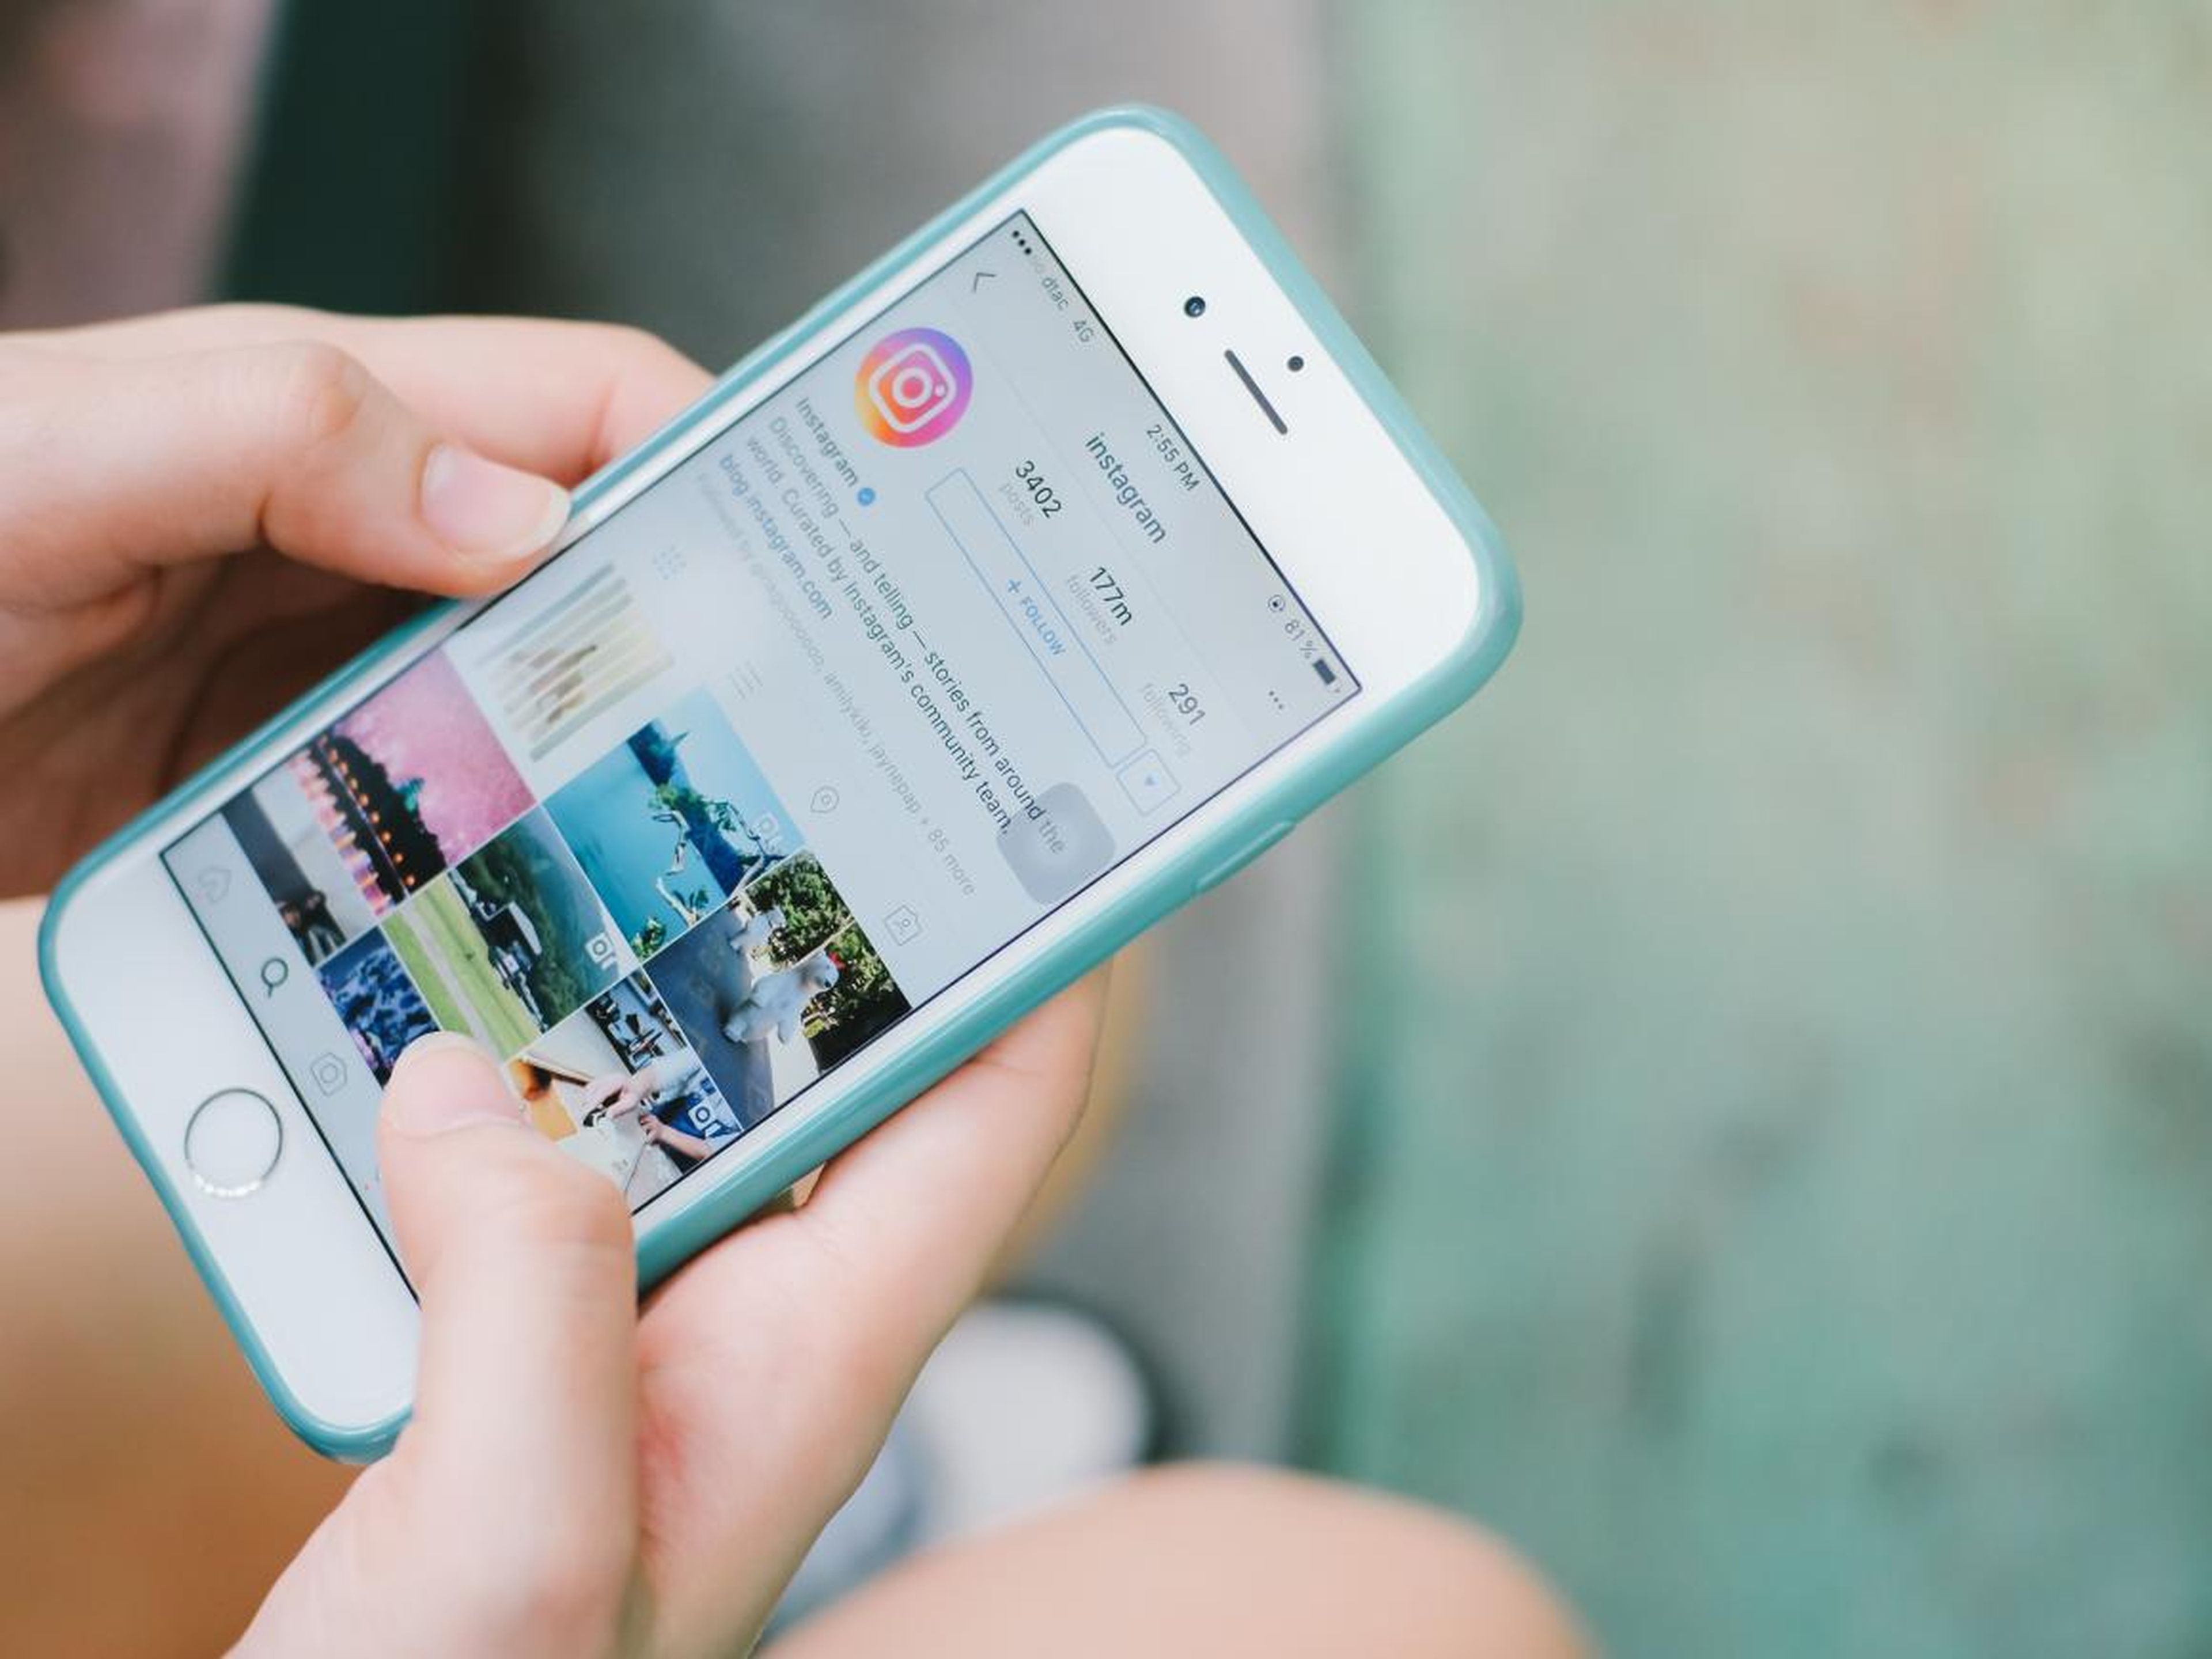 La aerolínea de bajo coste easyJet está ayudando a los usuarios a encontrar destino gracias a Instagram